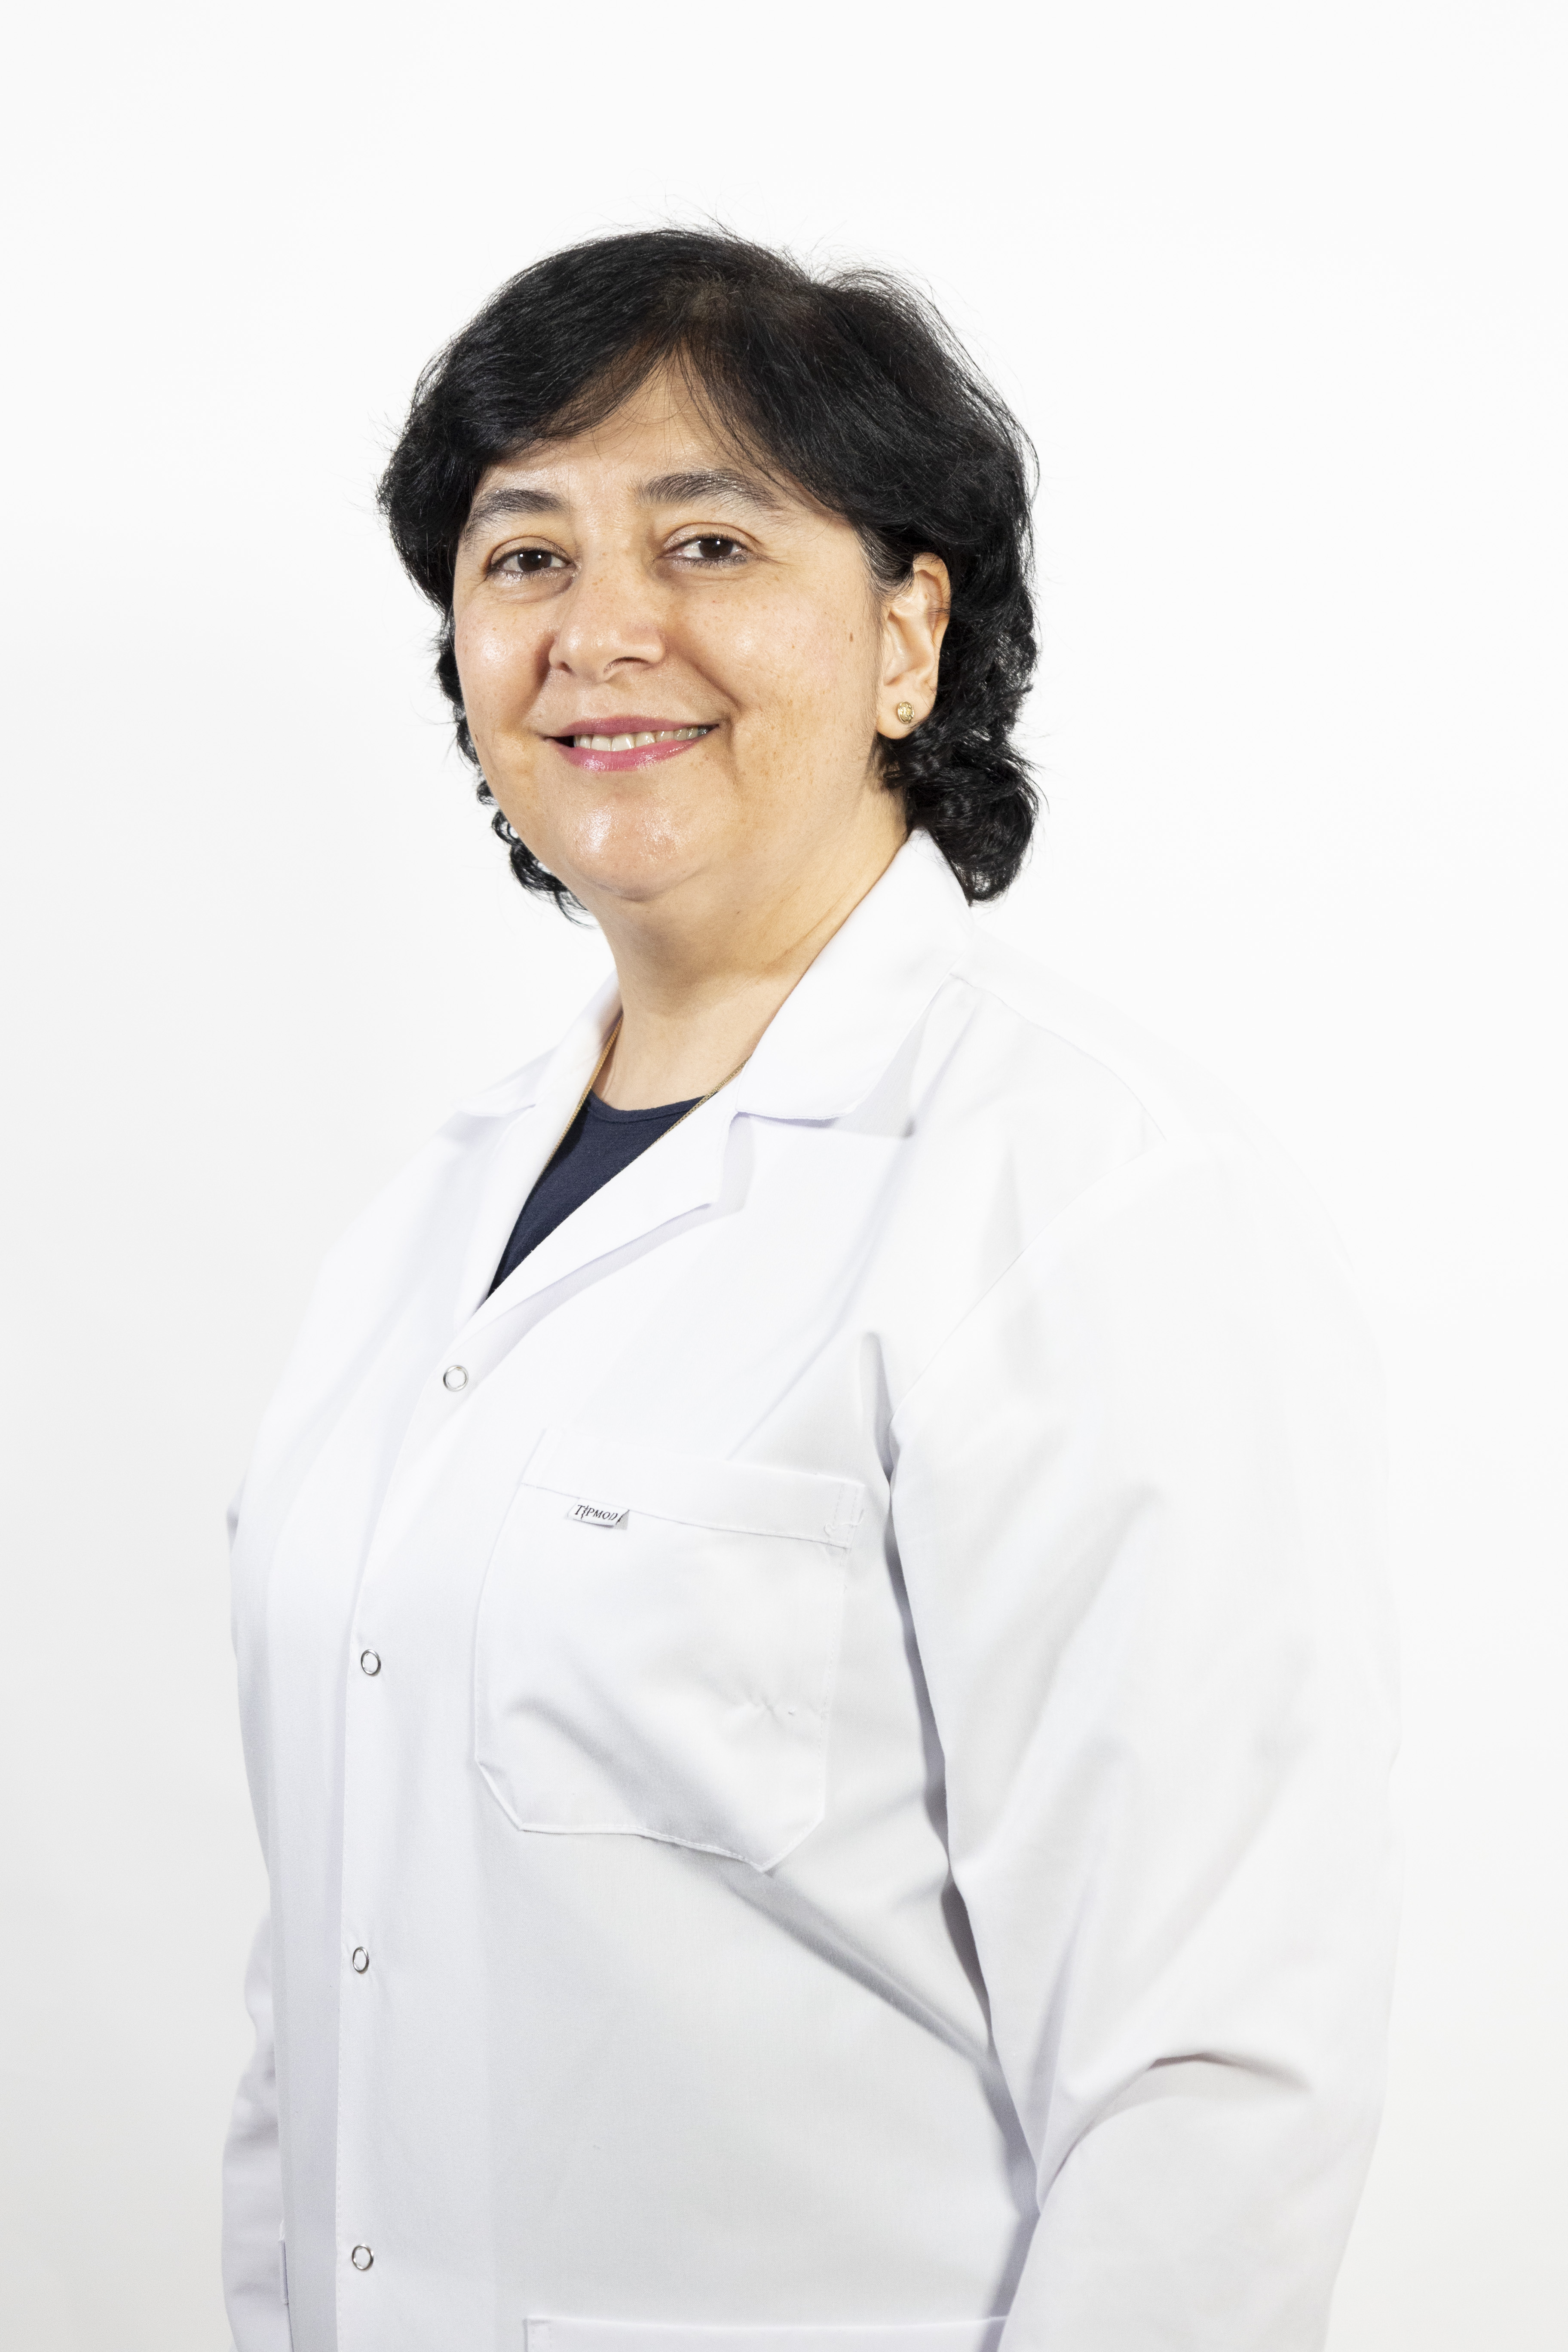 Noroloji Uzmanı Dr. Meliha Aydın